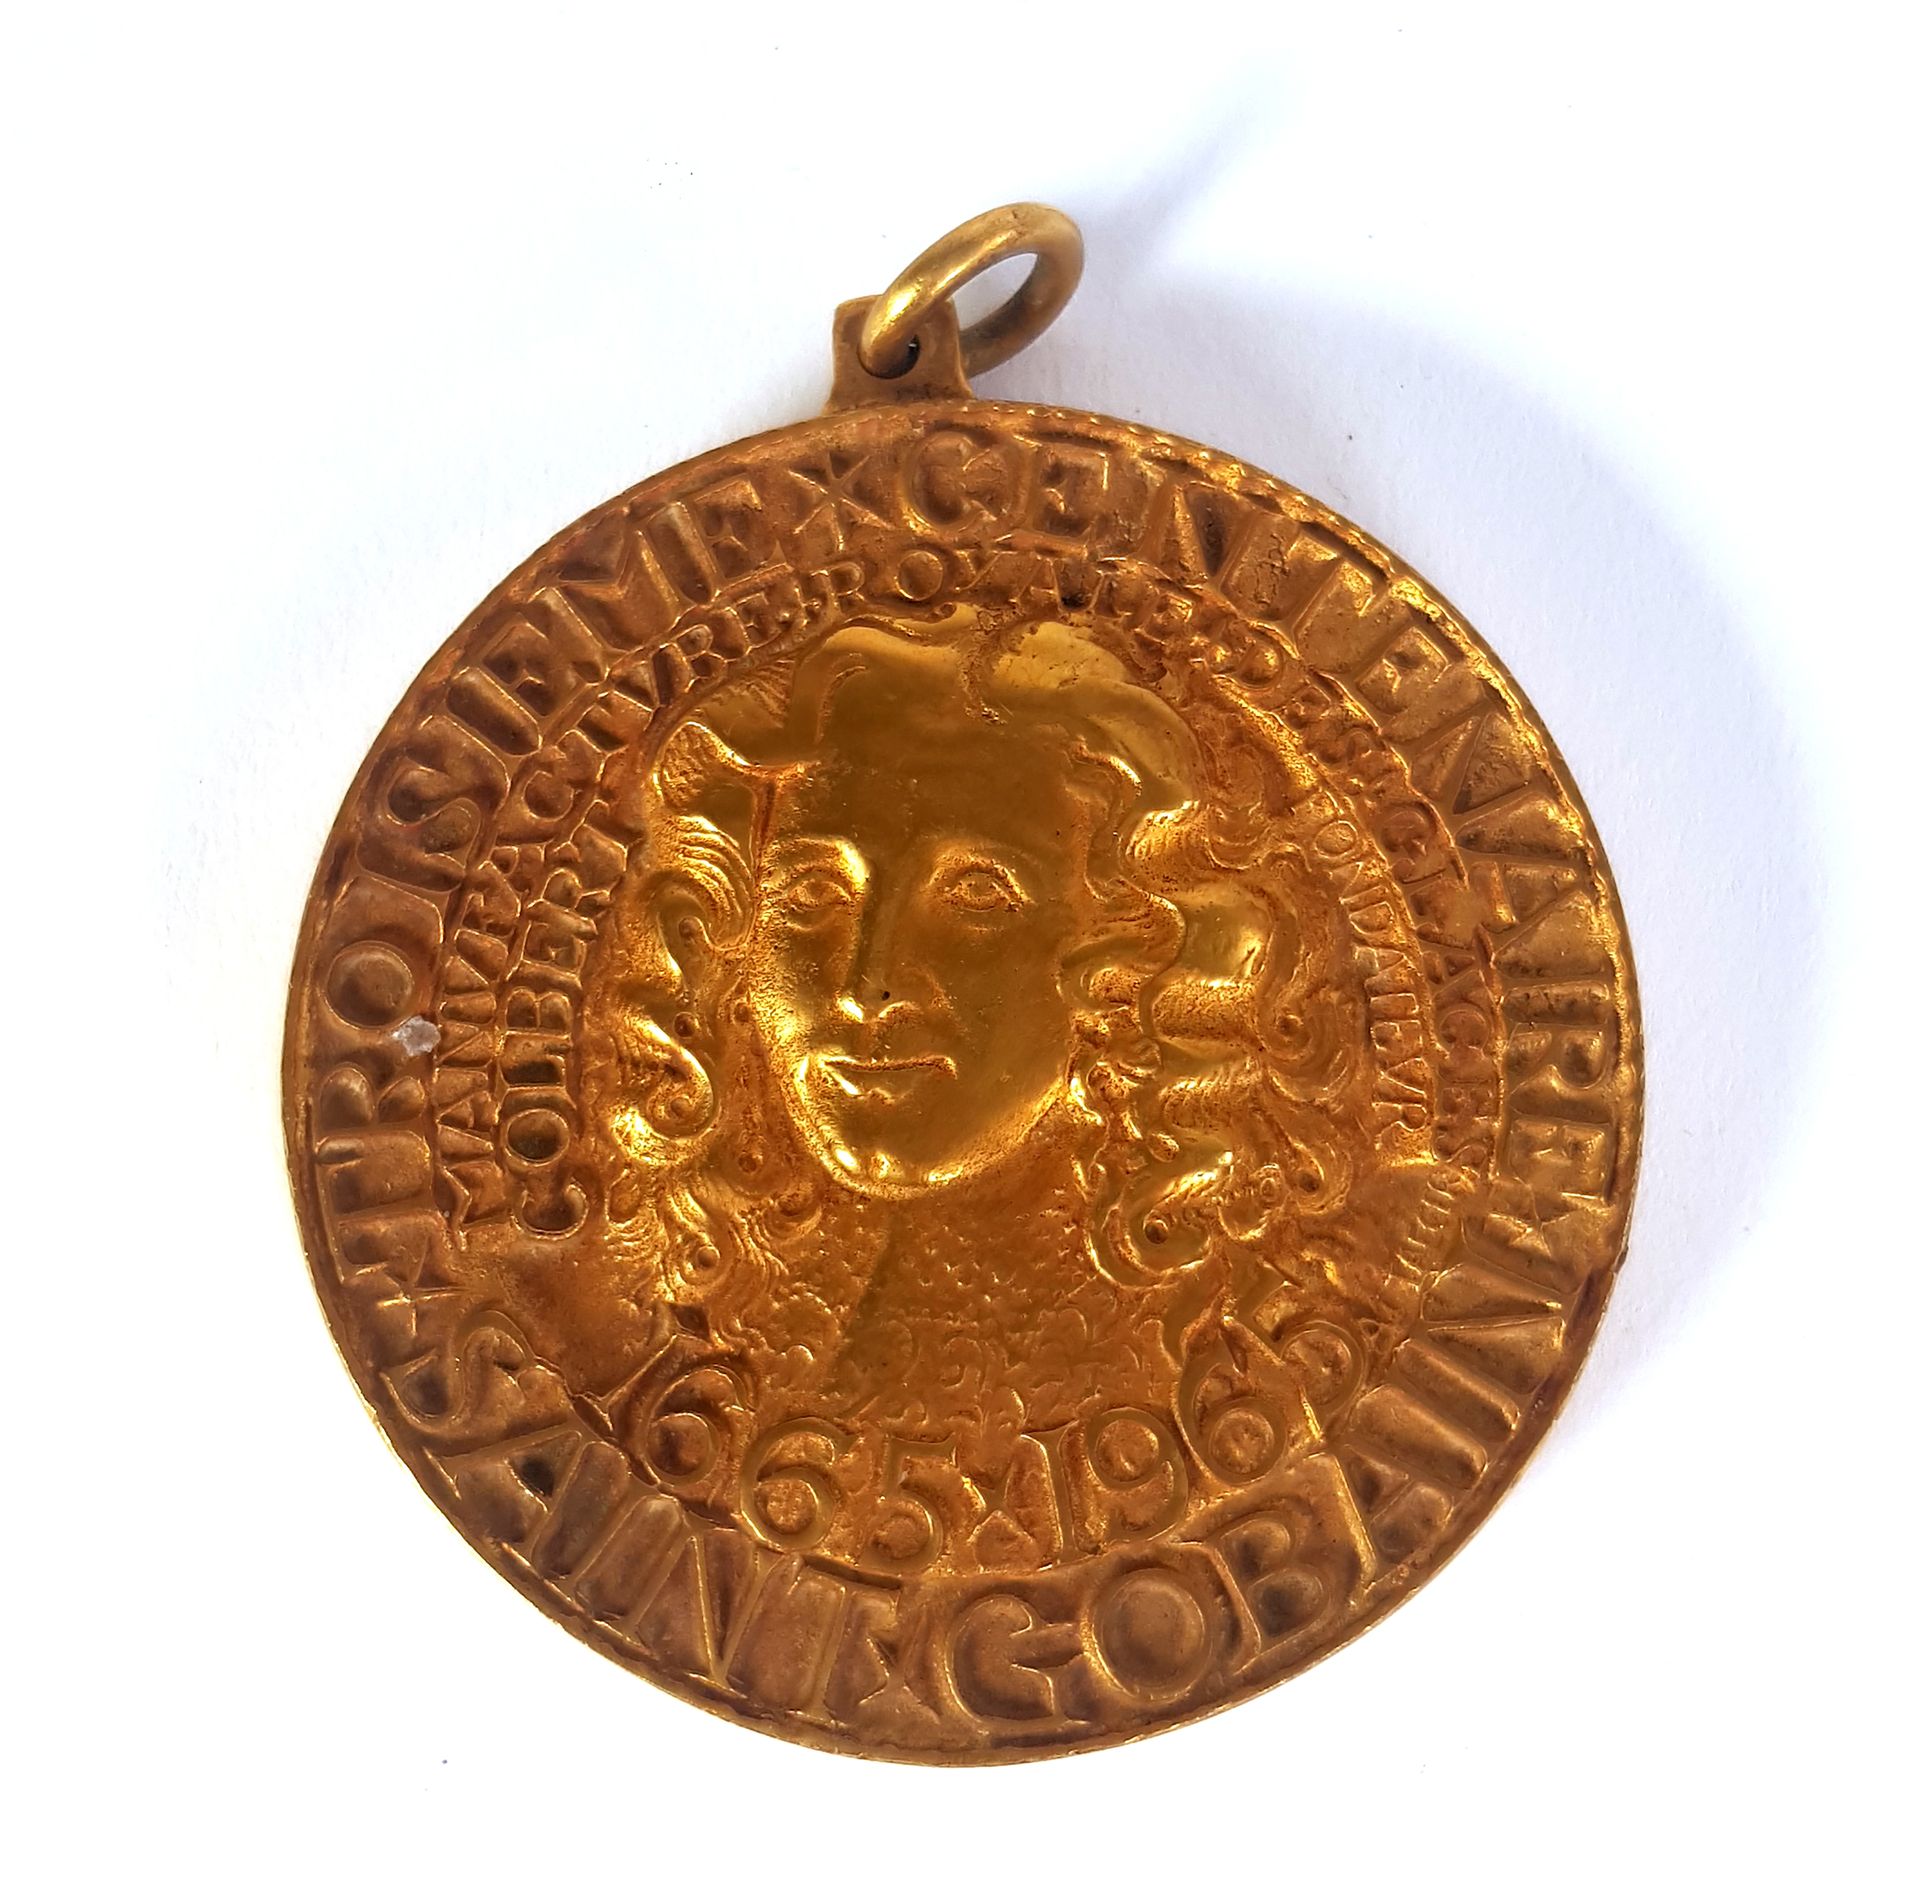 Null ALBERT DE JAEGER (1908-1992) ESCULTOR-MEDALLISTA

Medalla de bronce conmemo&hellip;